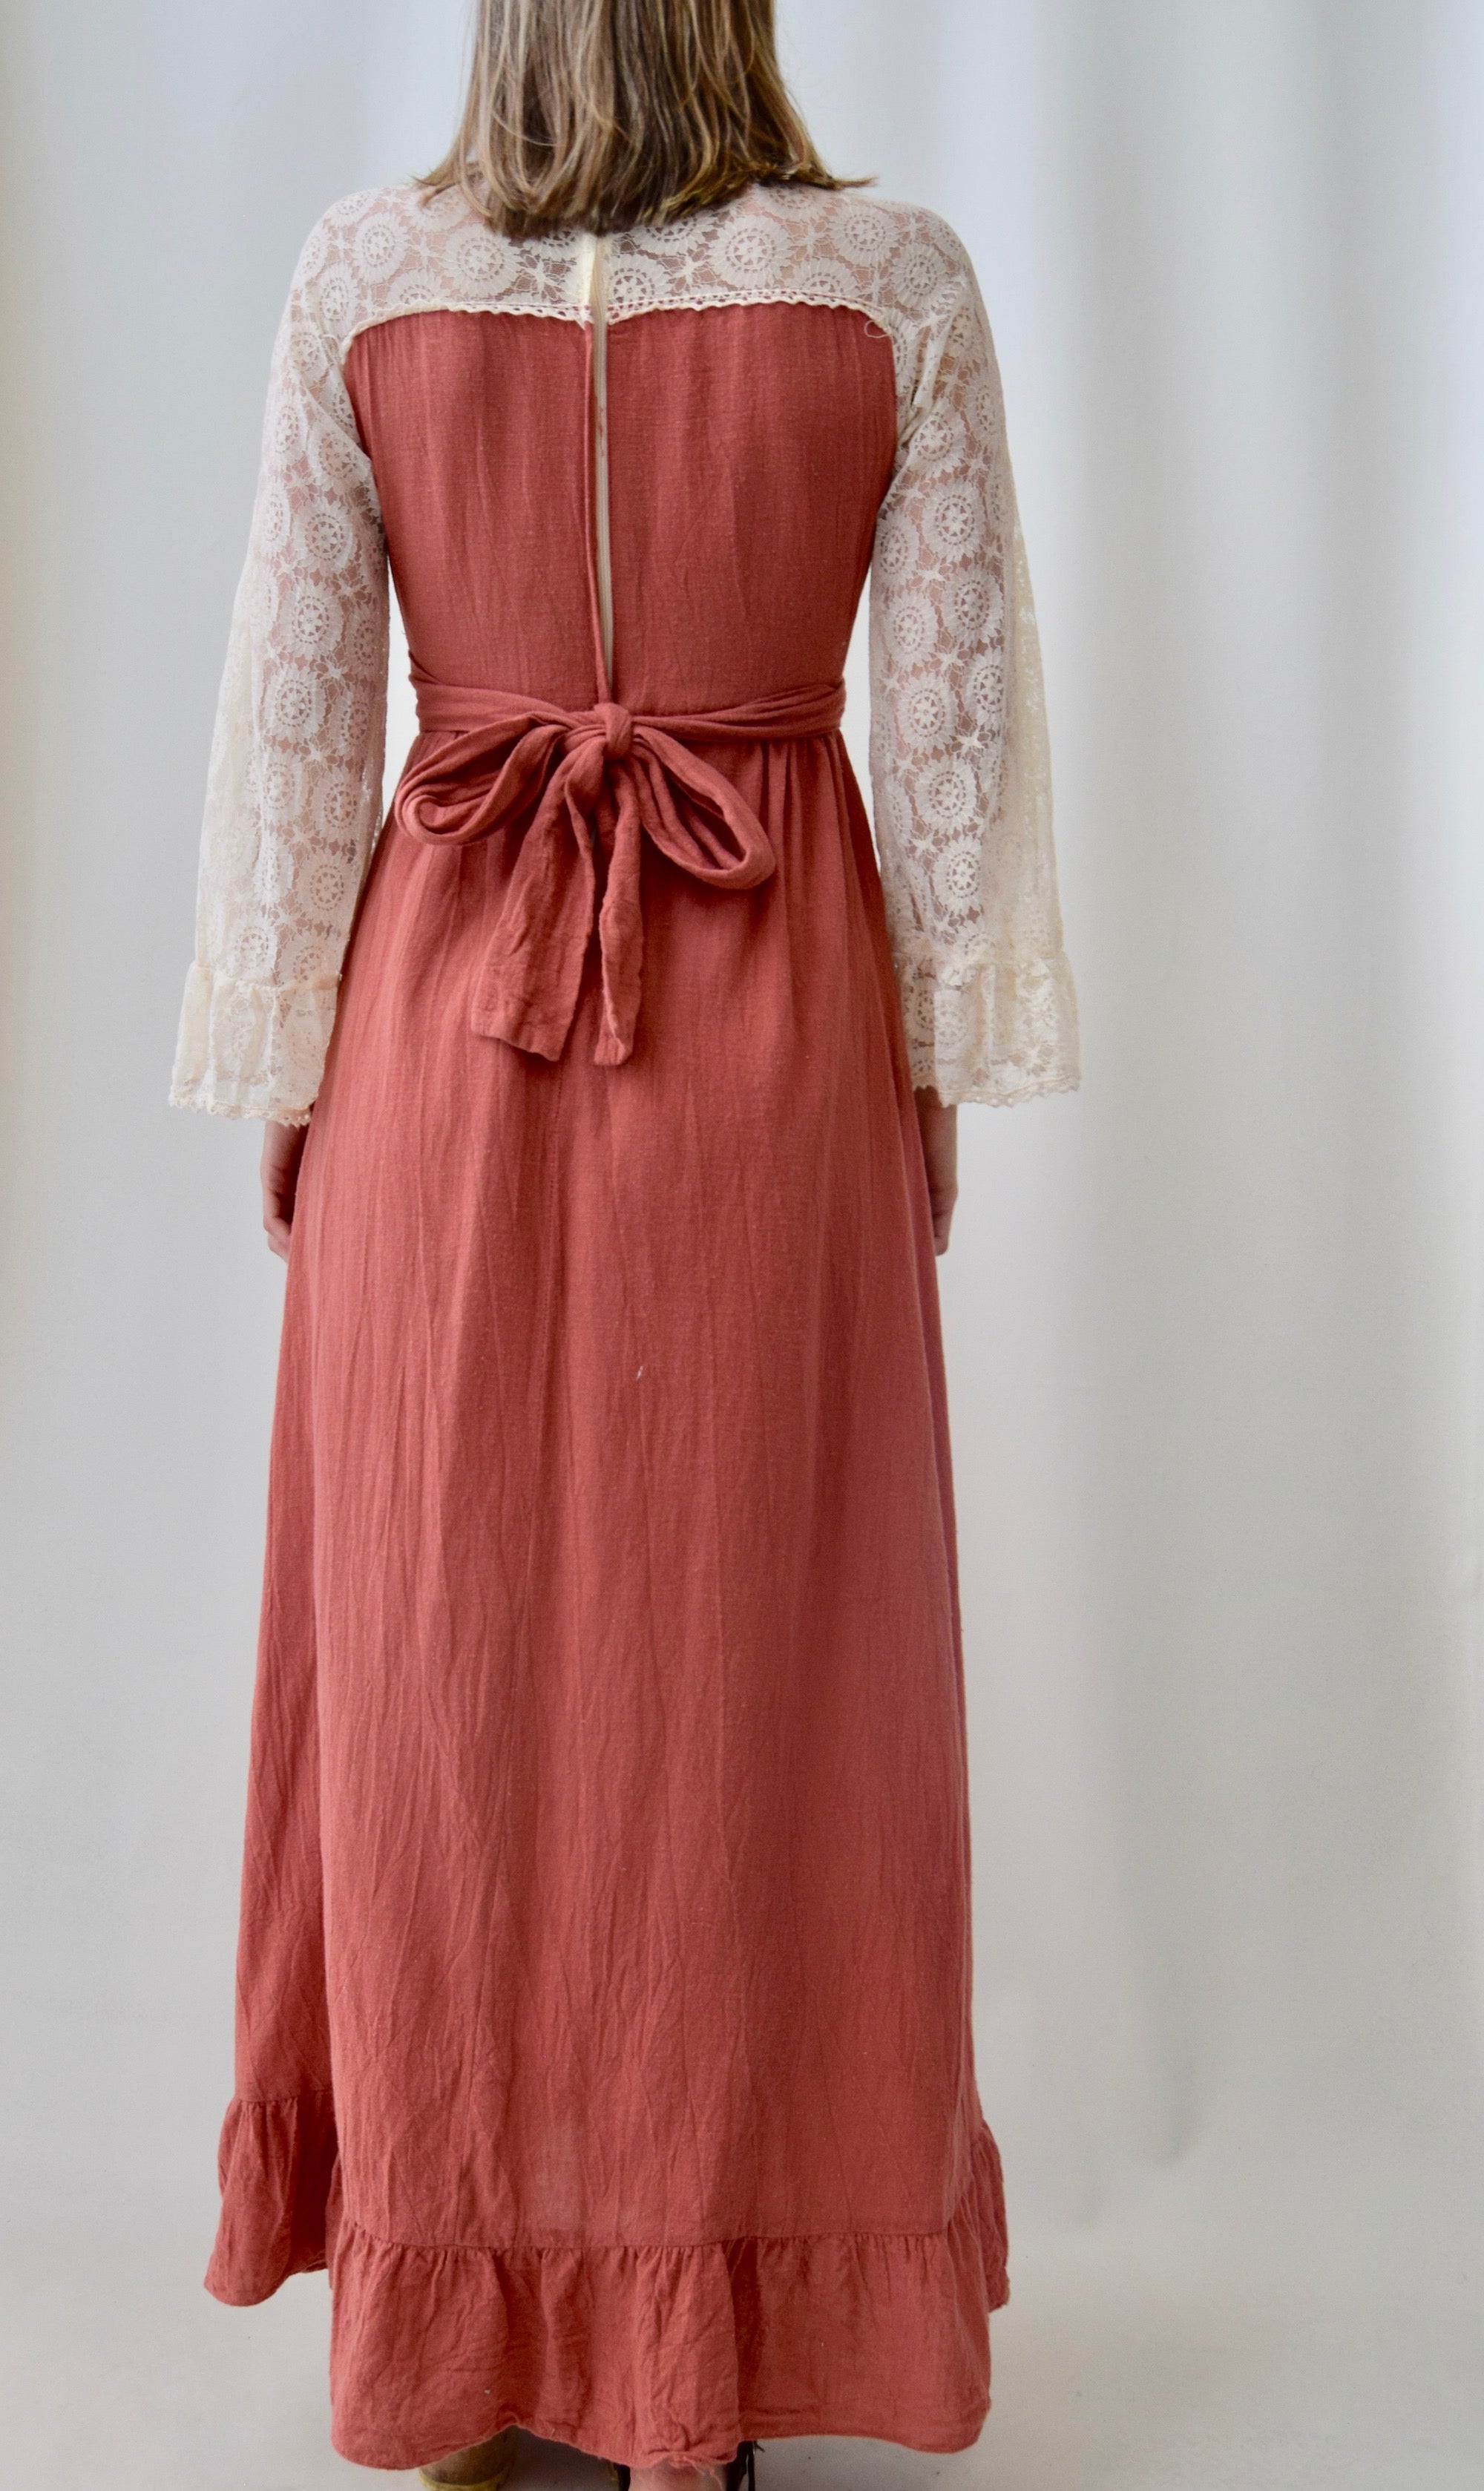 1970's Peach Peasant Dress